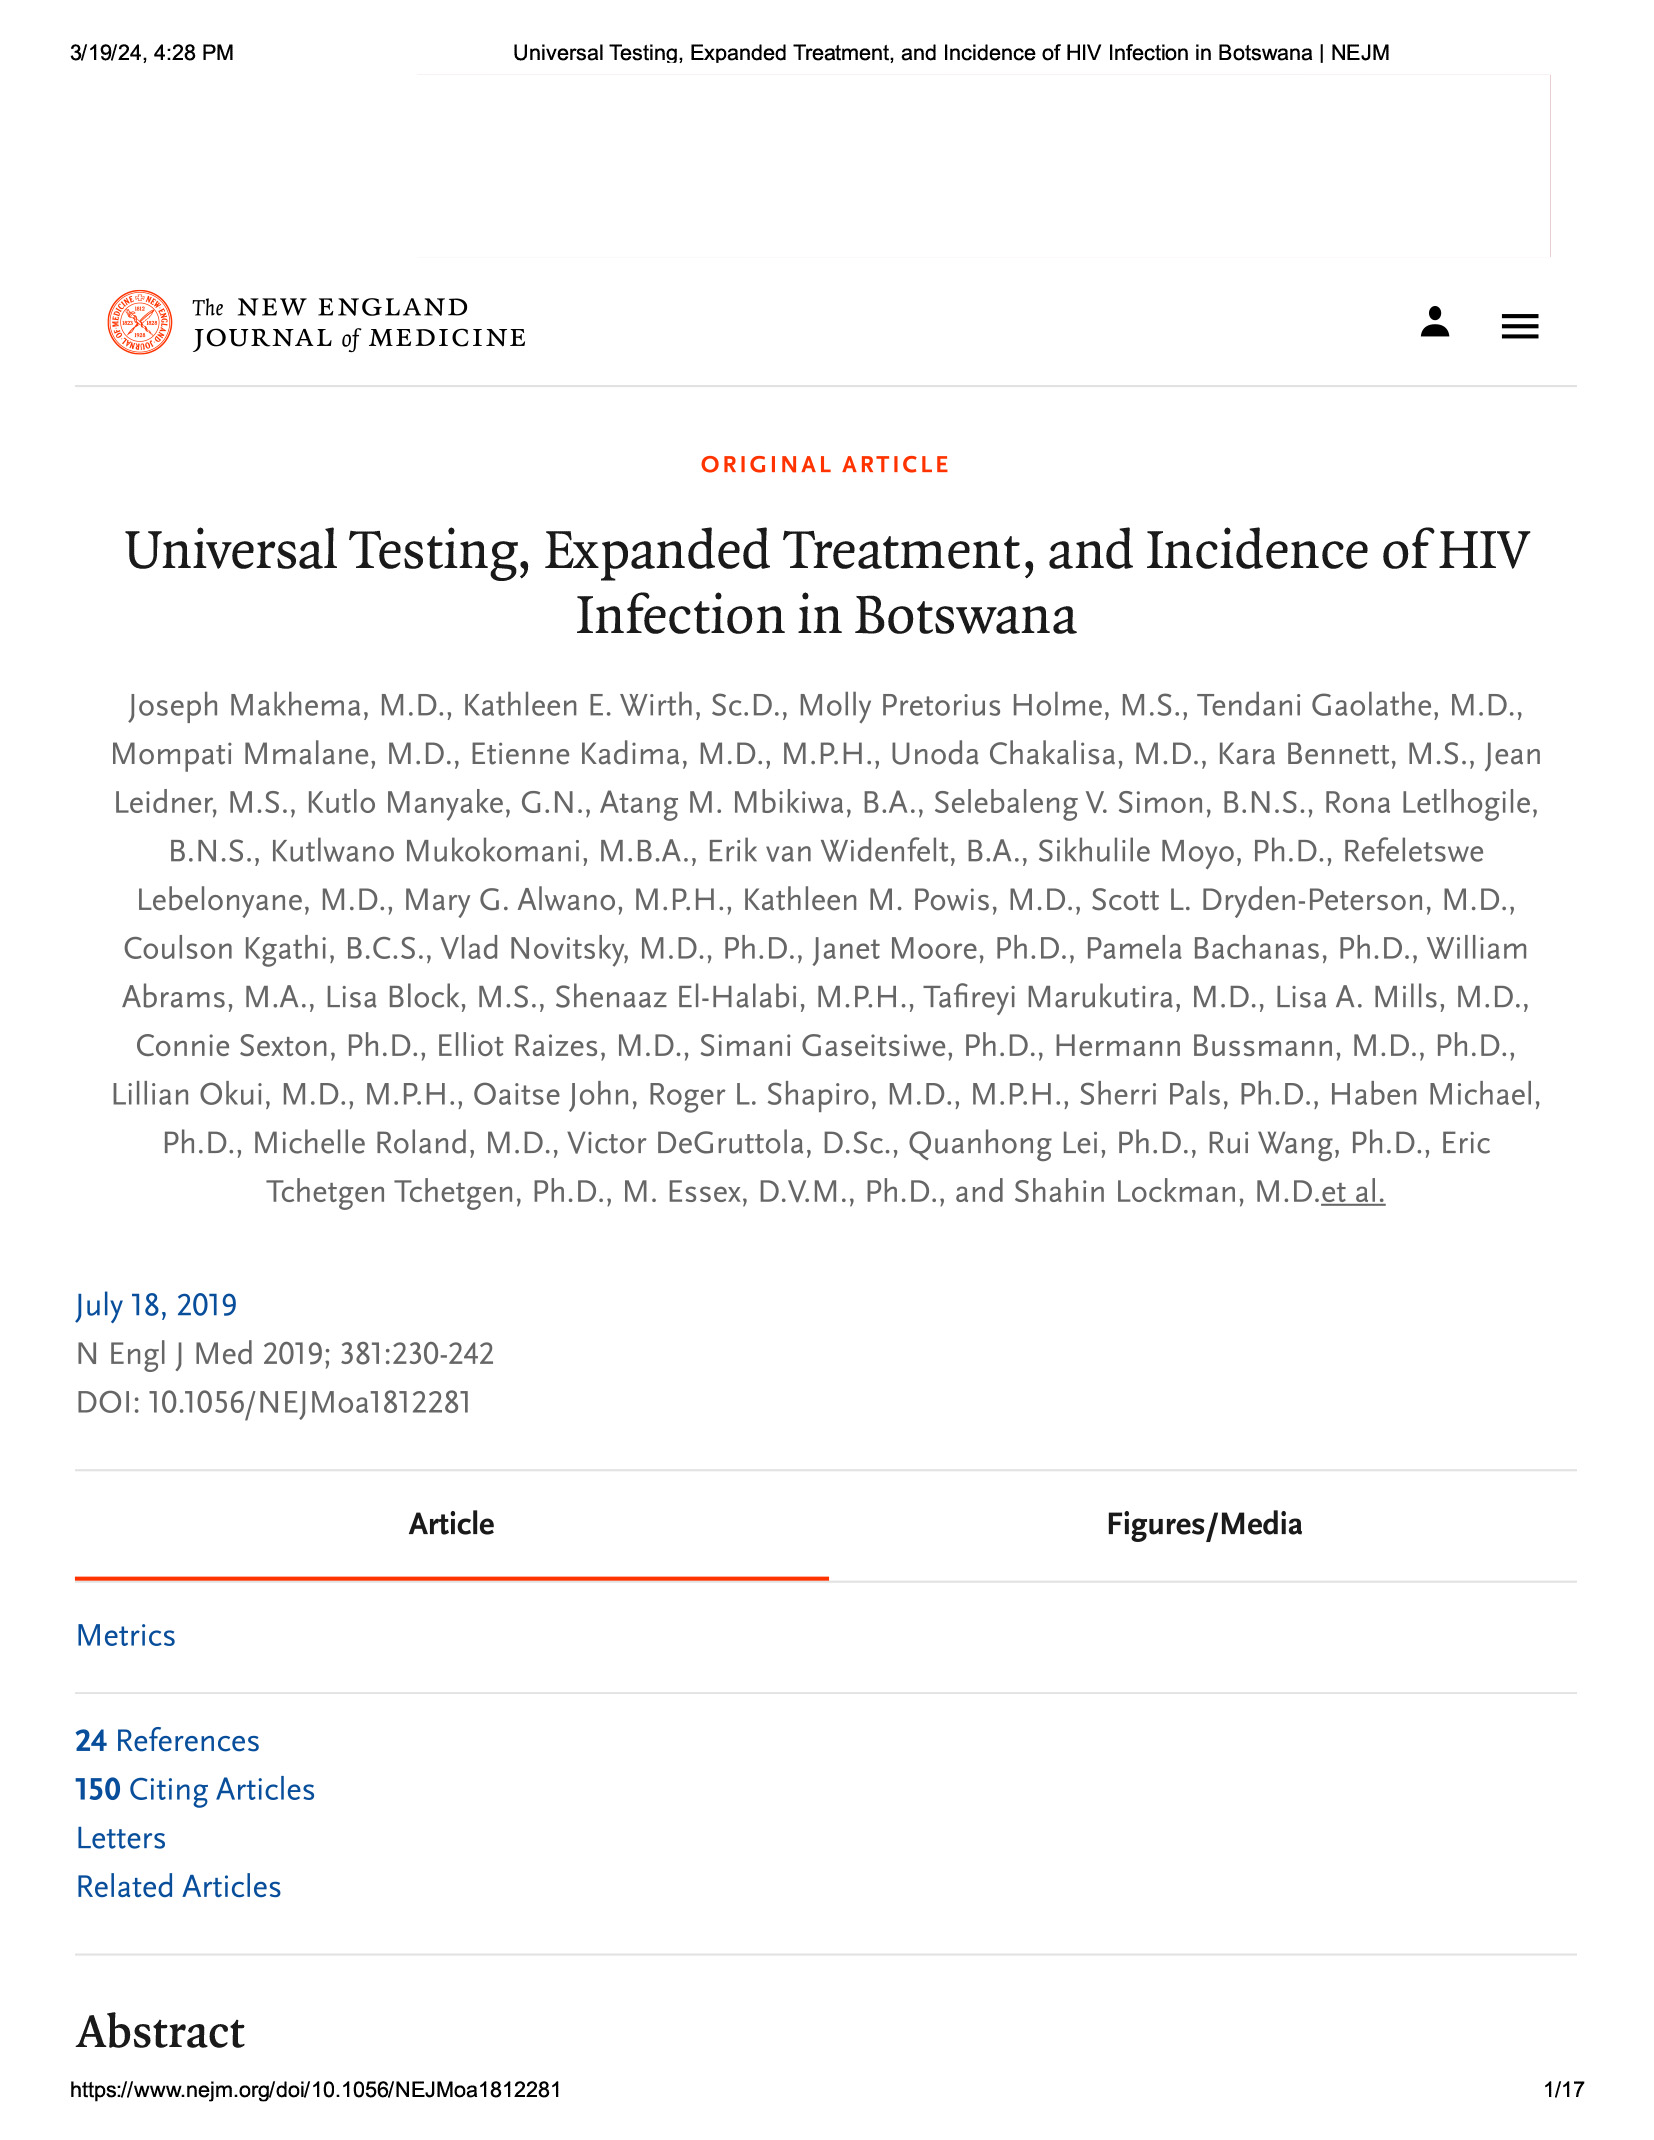 Pruebas universales, tratamiento ampliado e incidencia de la infección por el VIH en Botsuana - portada